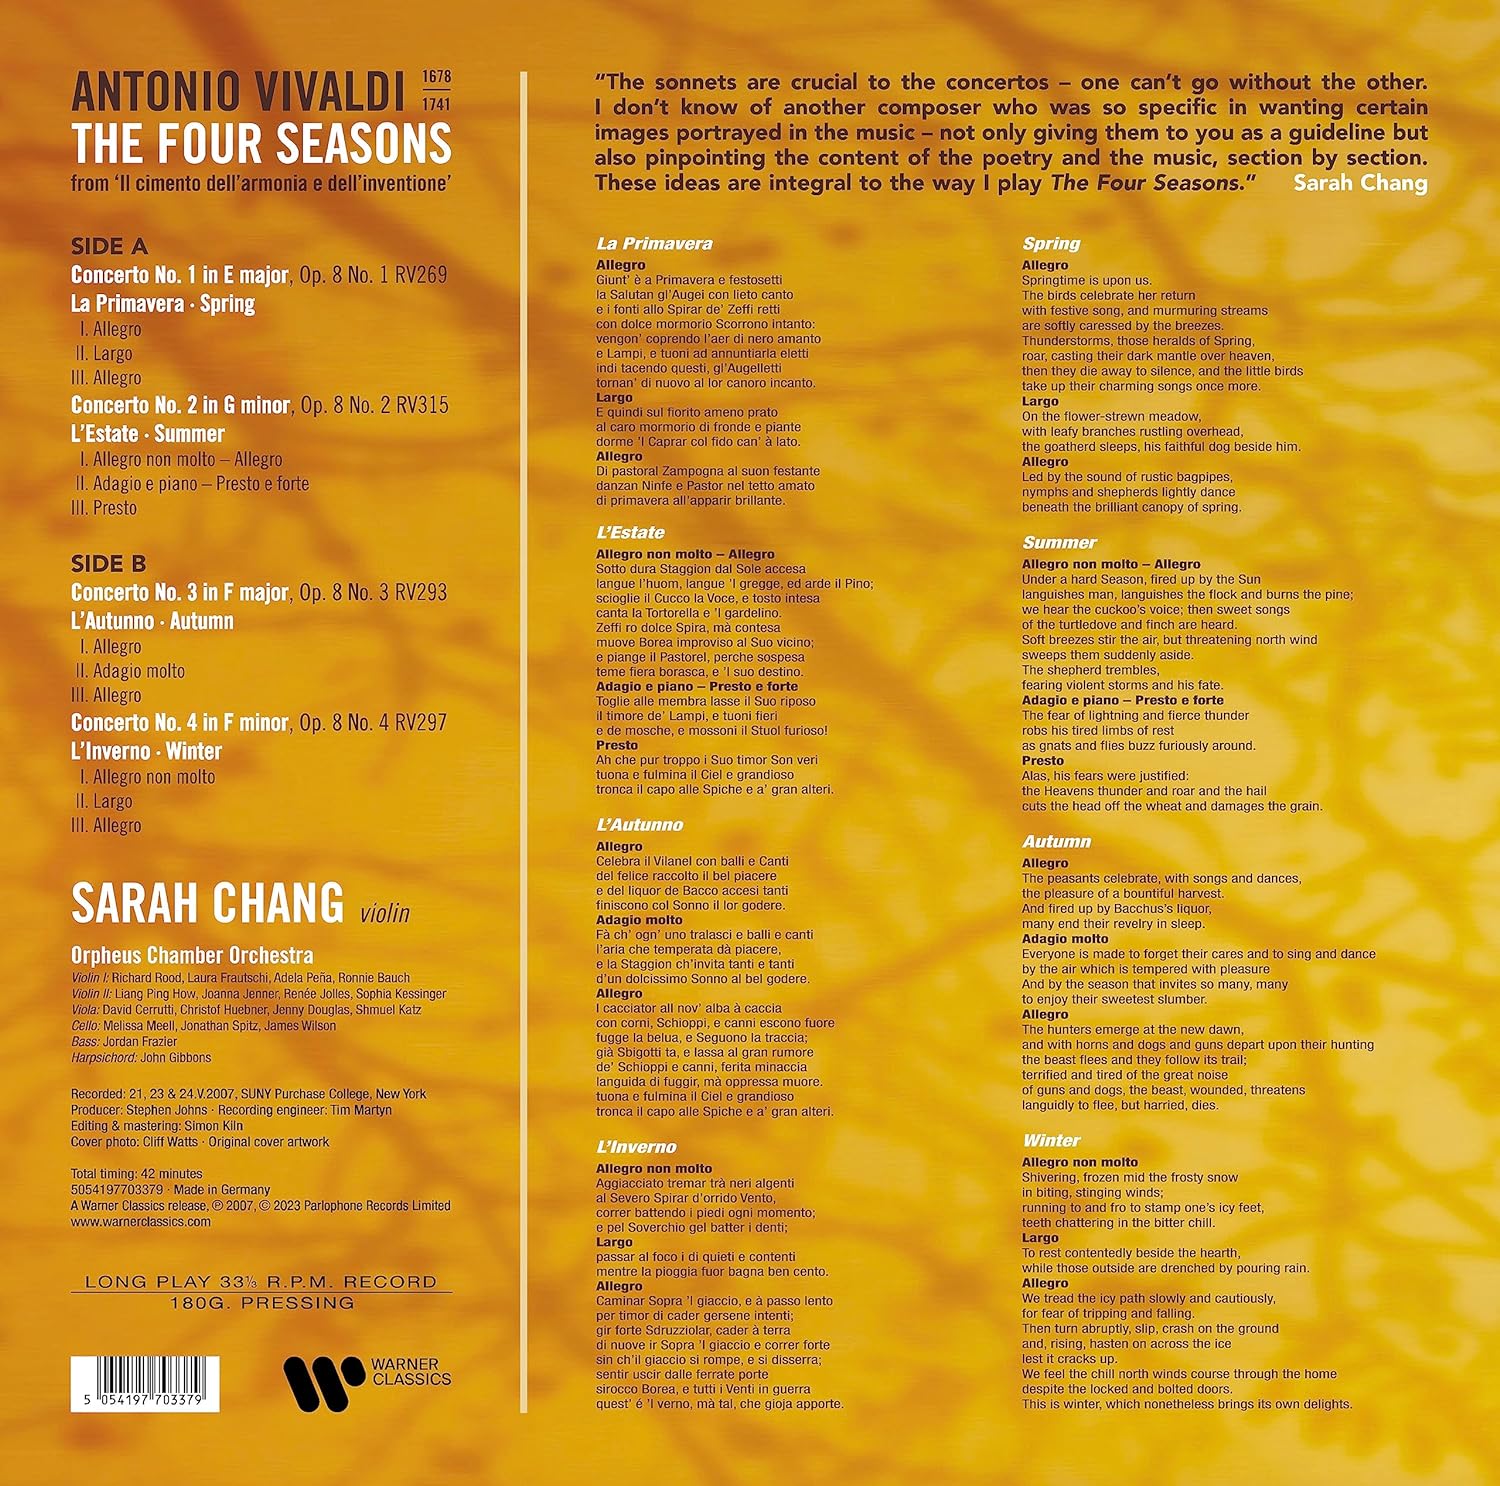 장영주 (Sarah Chang) - 비발디: 사계 (Vivaldi: The Four Seasons) [LP]